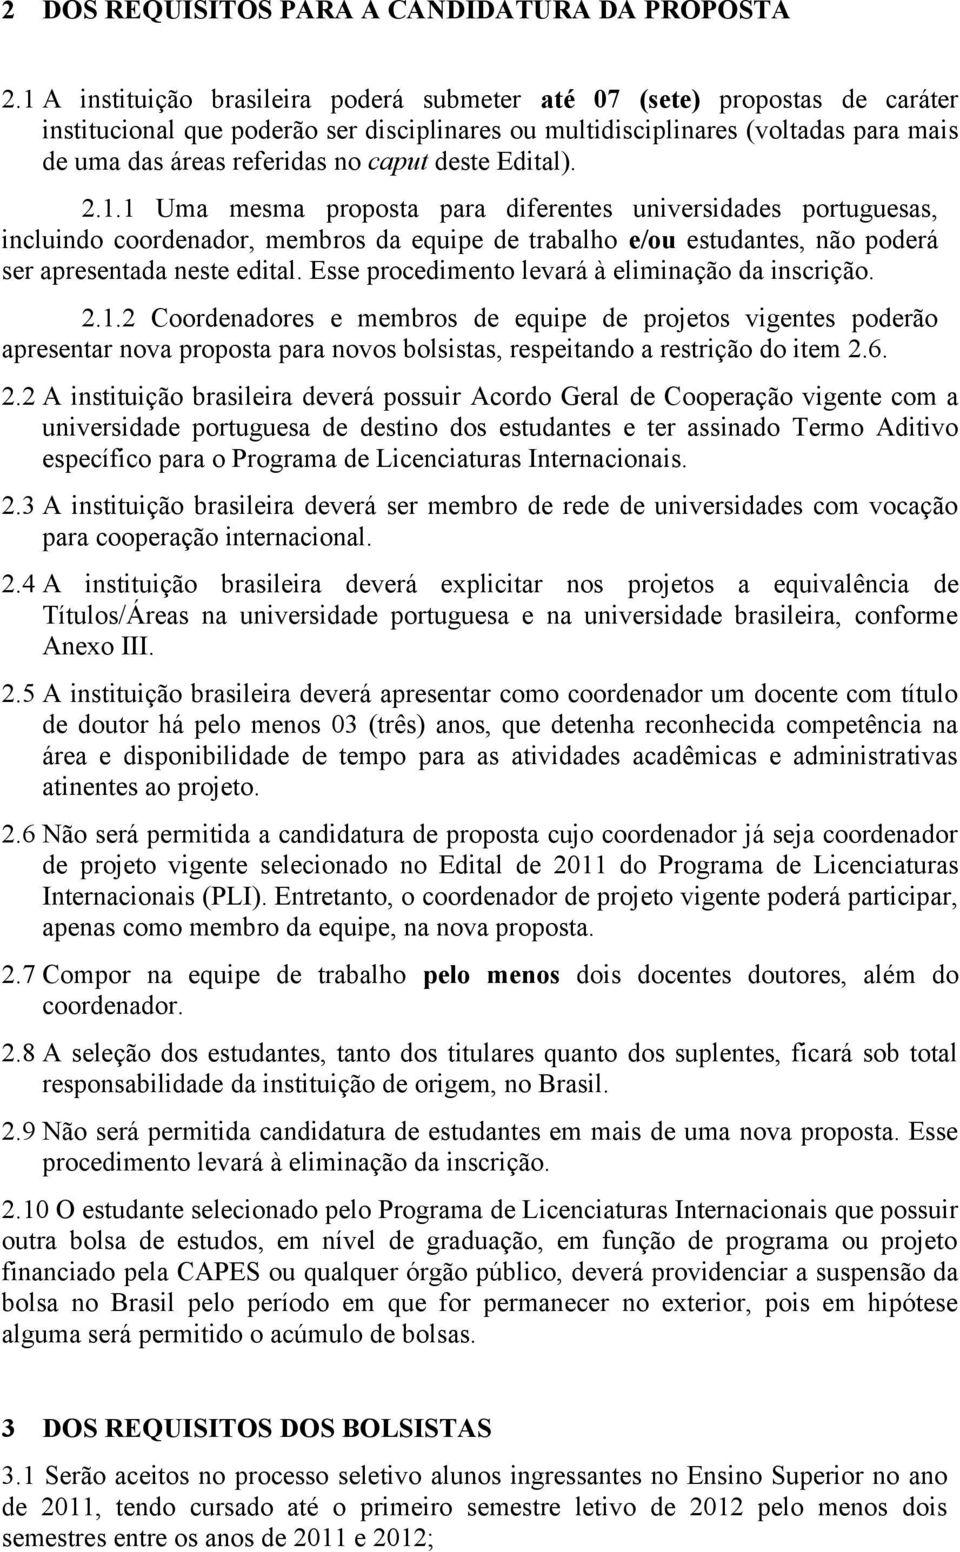 deste Edital). 2.1.1 Uma mesma proposta para diferentes universidades portuguesas, incluindo coordenador, membros da equipe de trabalho e/ou estudantes, não poderá ser apresentada neste edital.